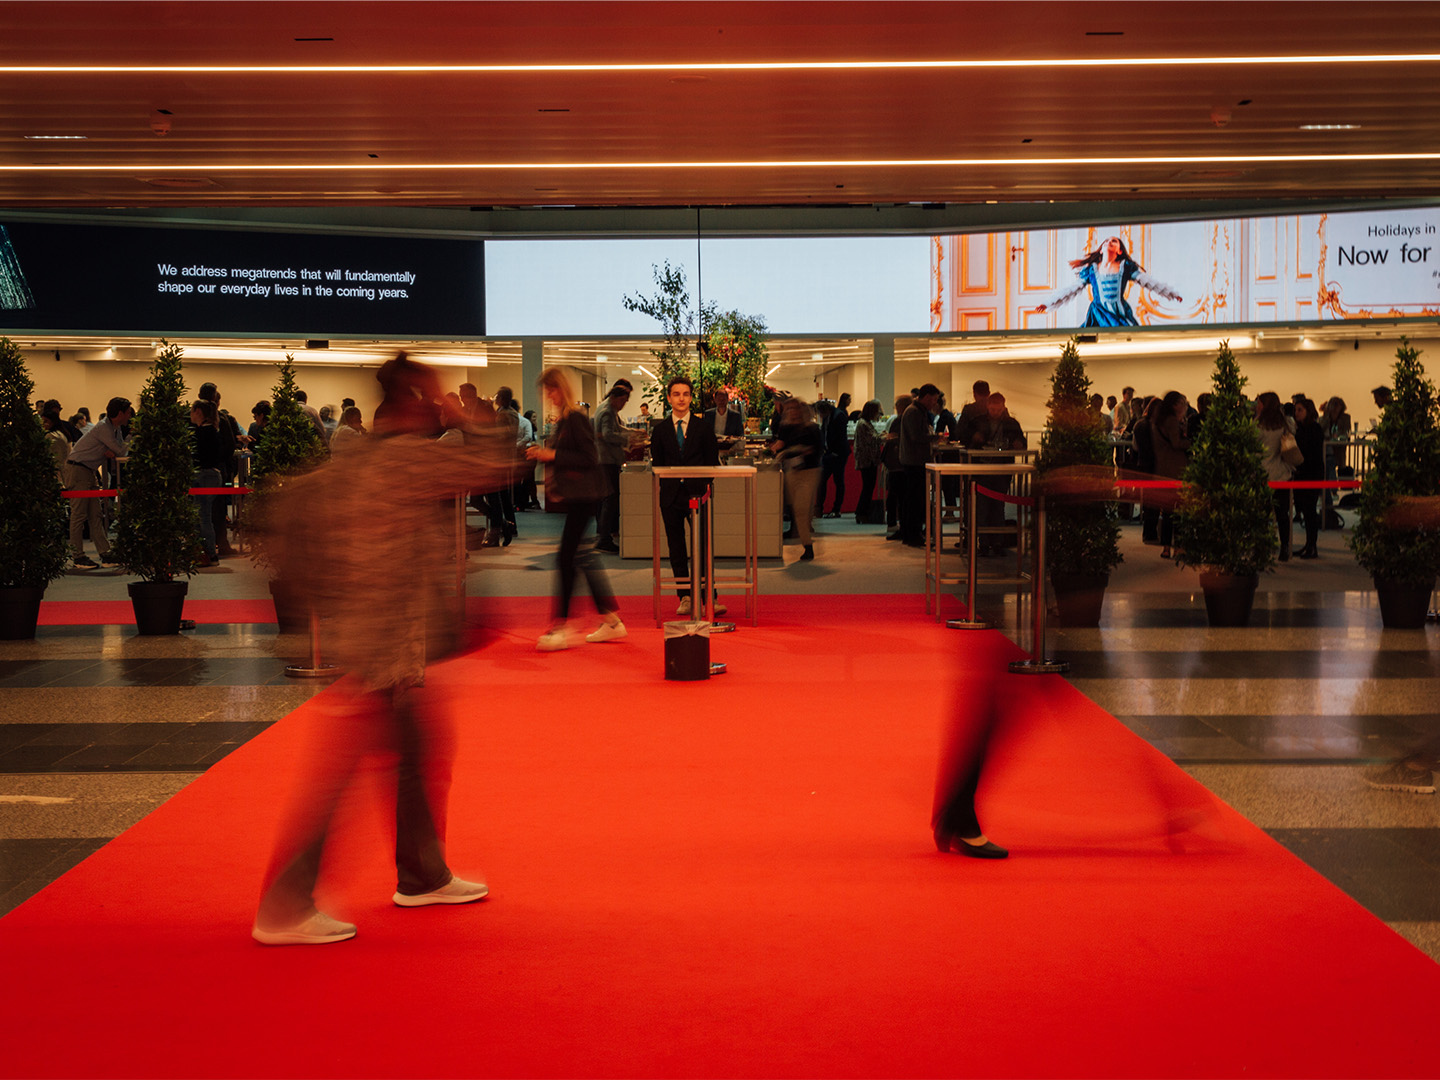 Foto: Roter Teppich in der Eingangshalle des Austria Center Viennas LED-Brandingflächen